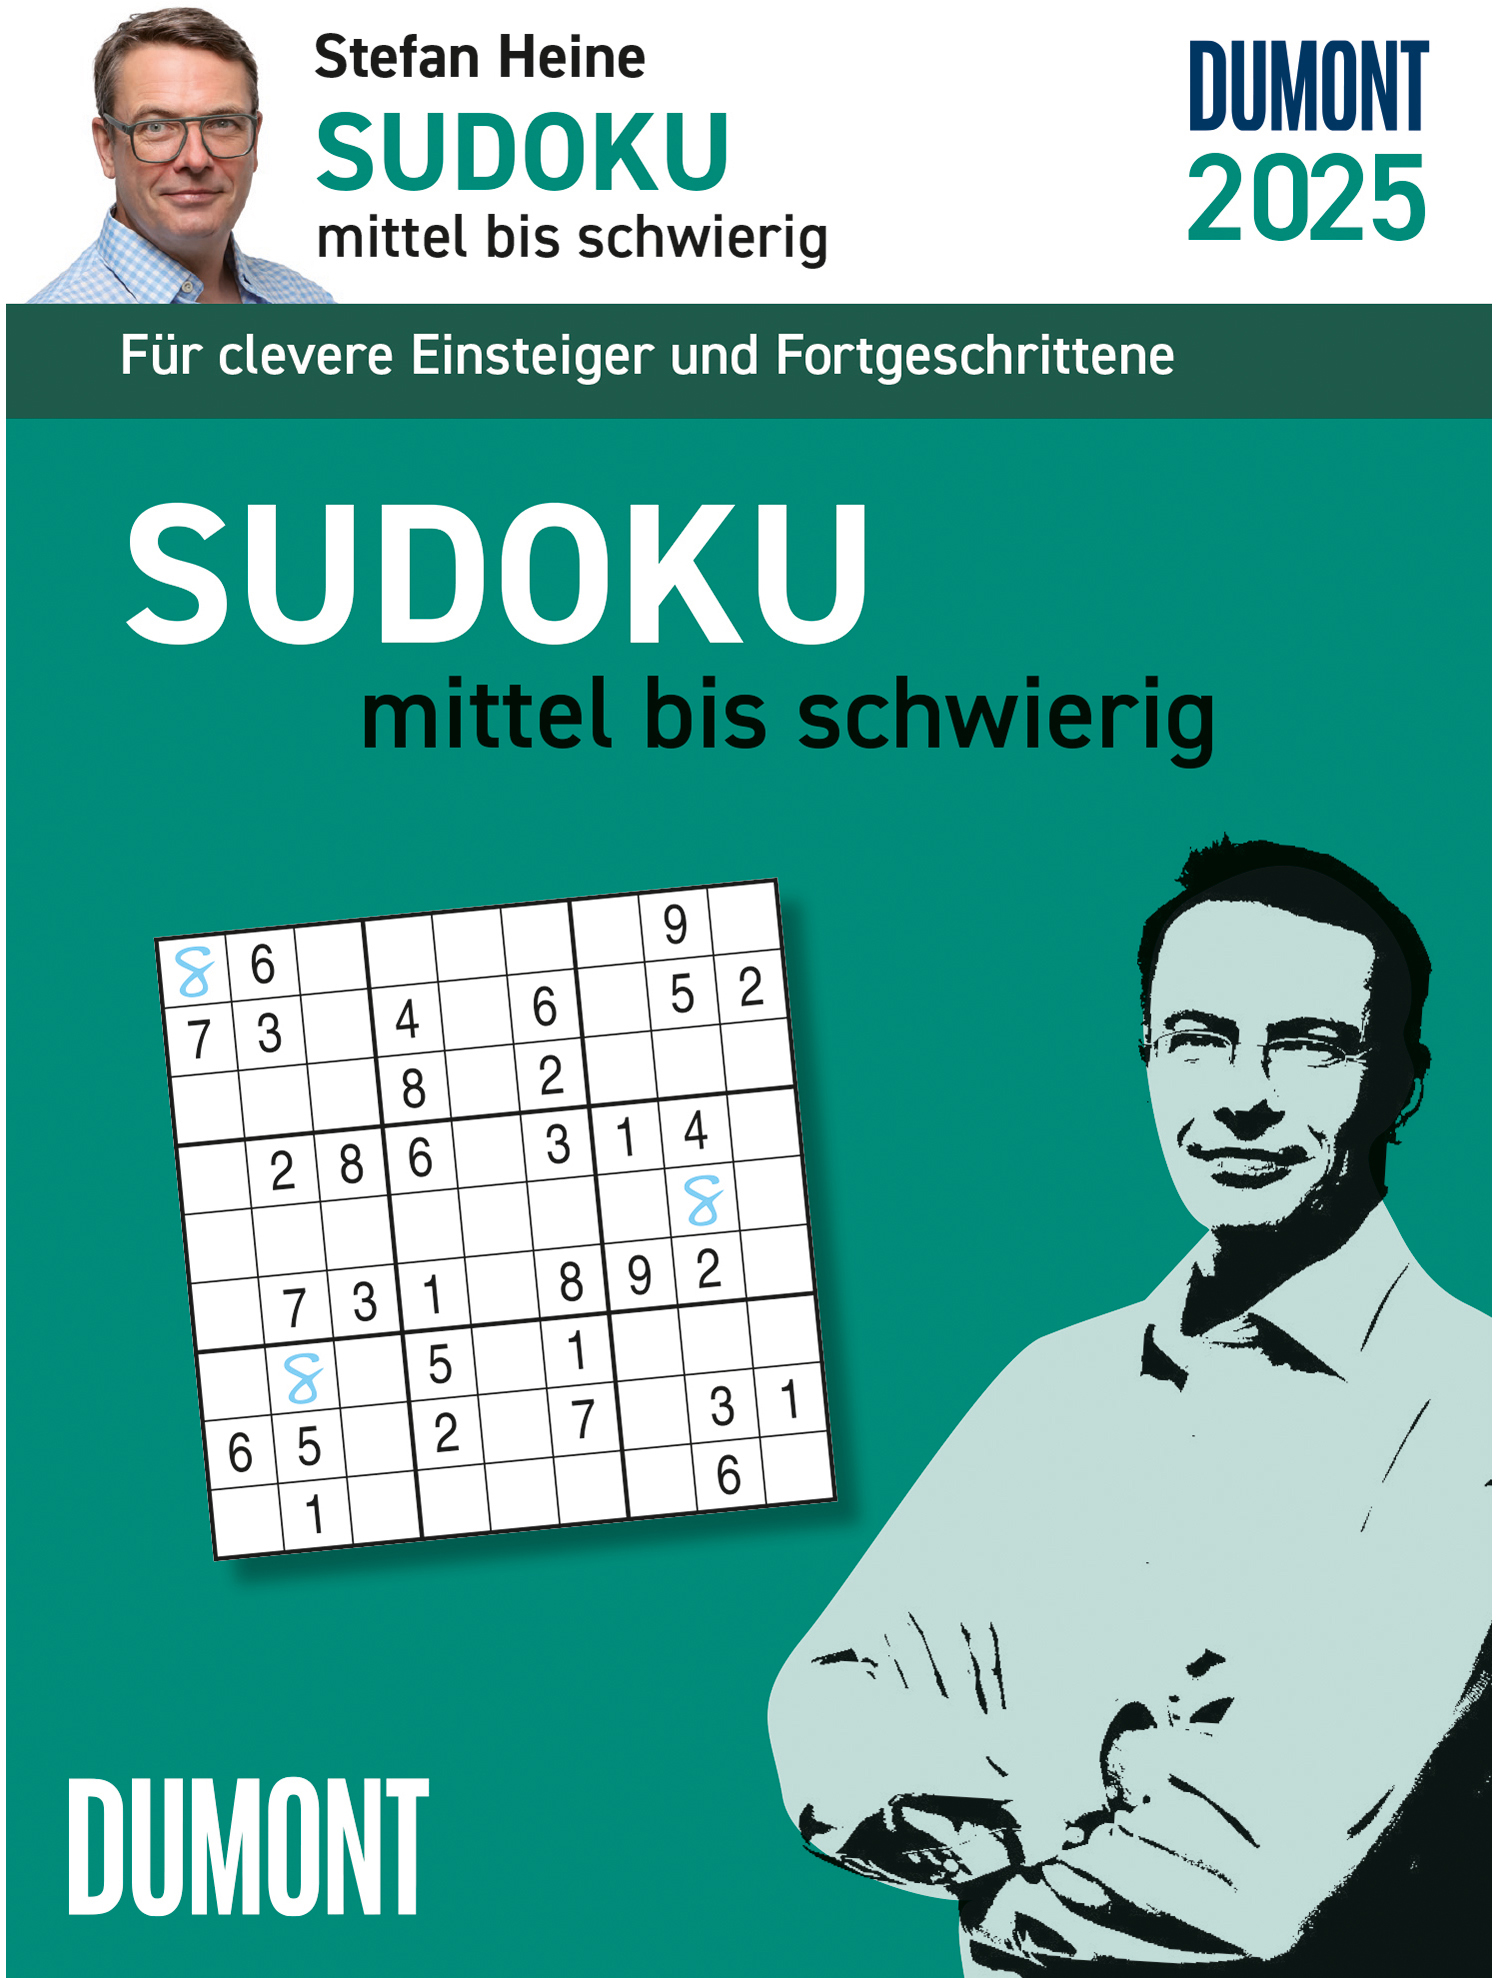 DUMONT Sudoku mittel-schwierig 2025 205382 DE 11.8x15.9cm